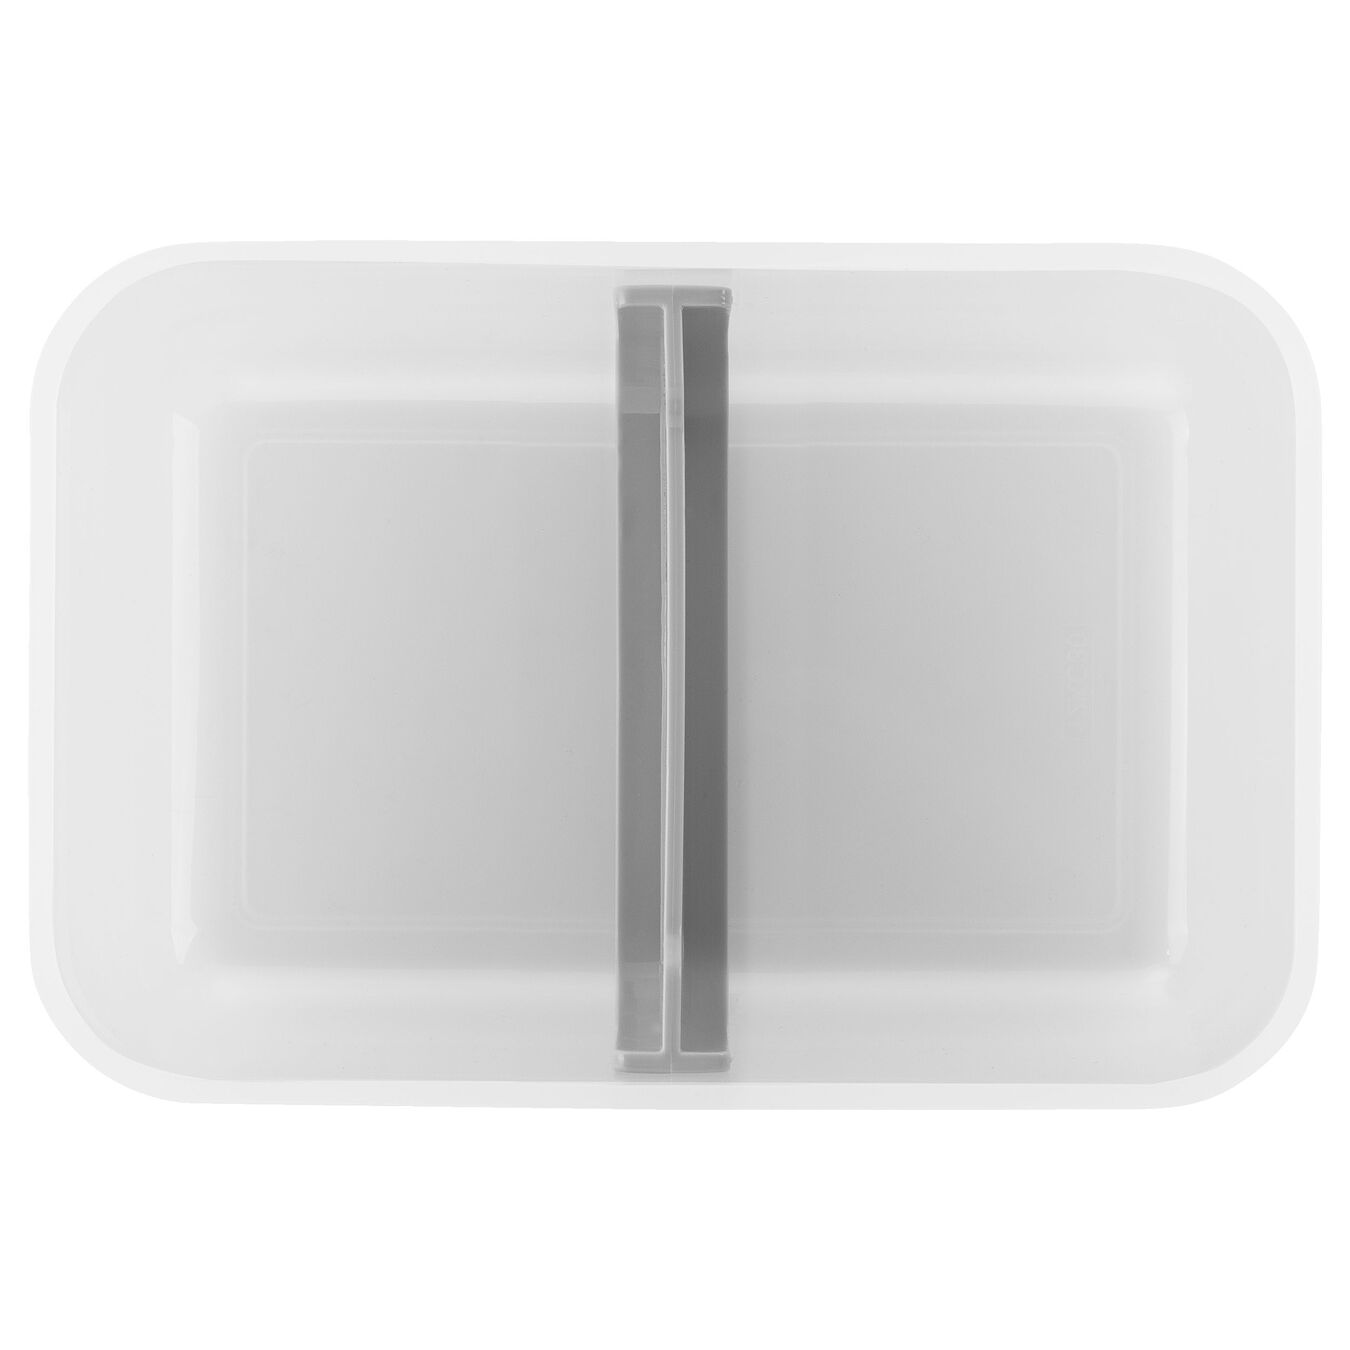 Lunch box L, Plastique, semi transparent-Gris,,large 4